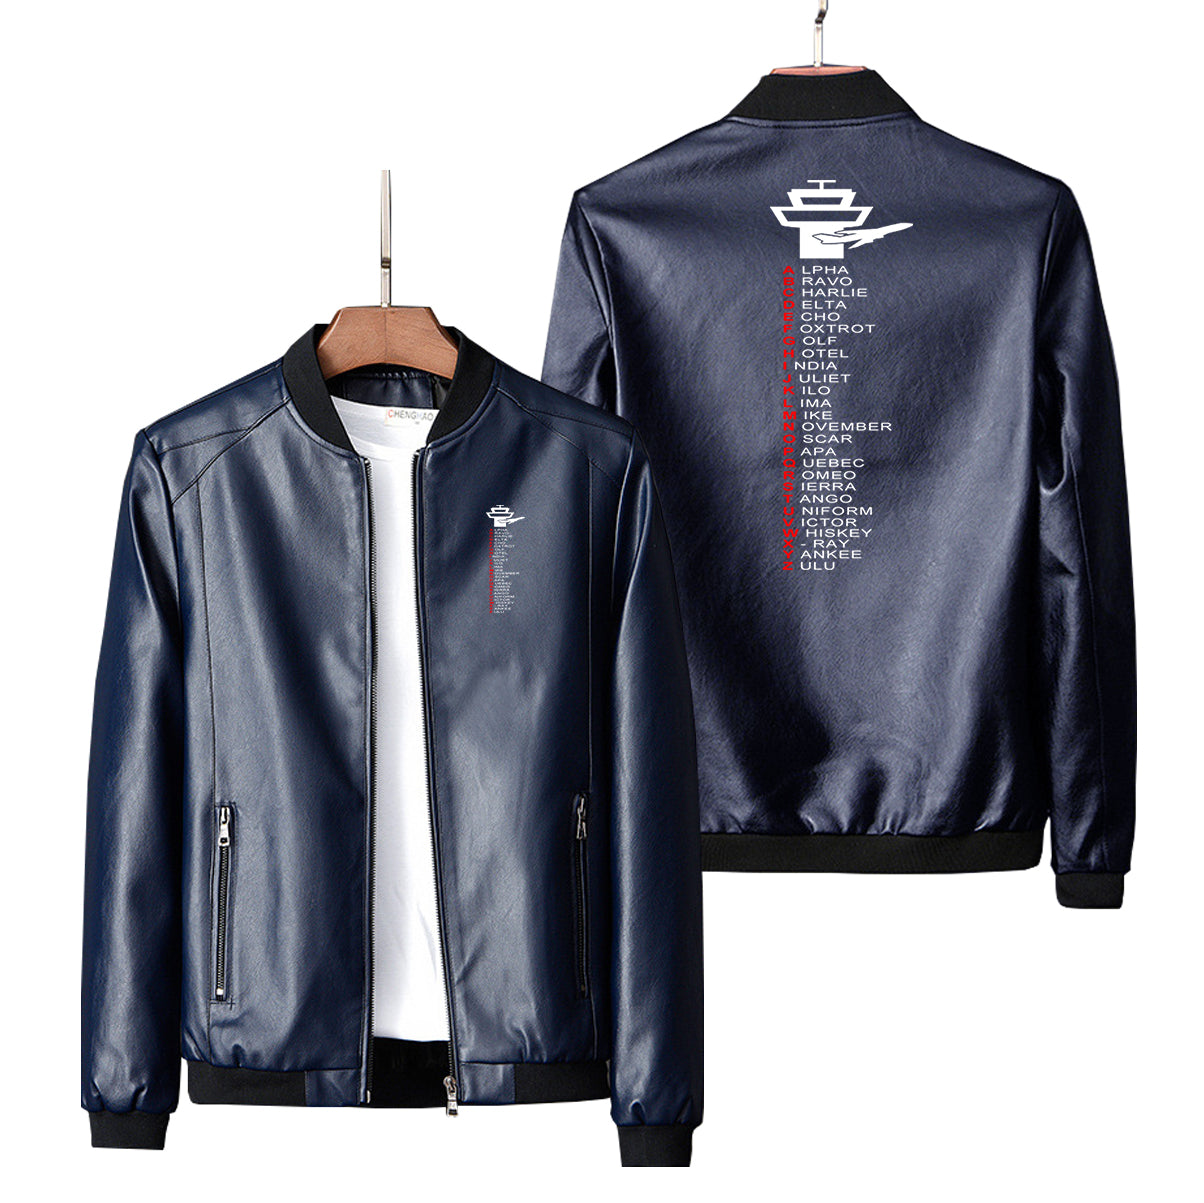 Aviation Alphabet Designed PU Leather Jackets